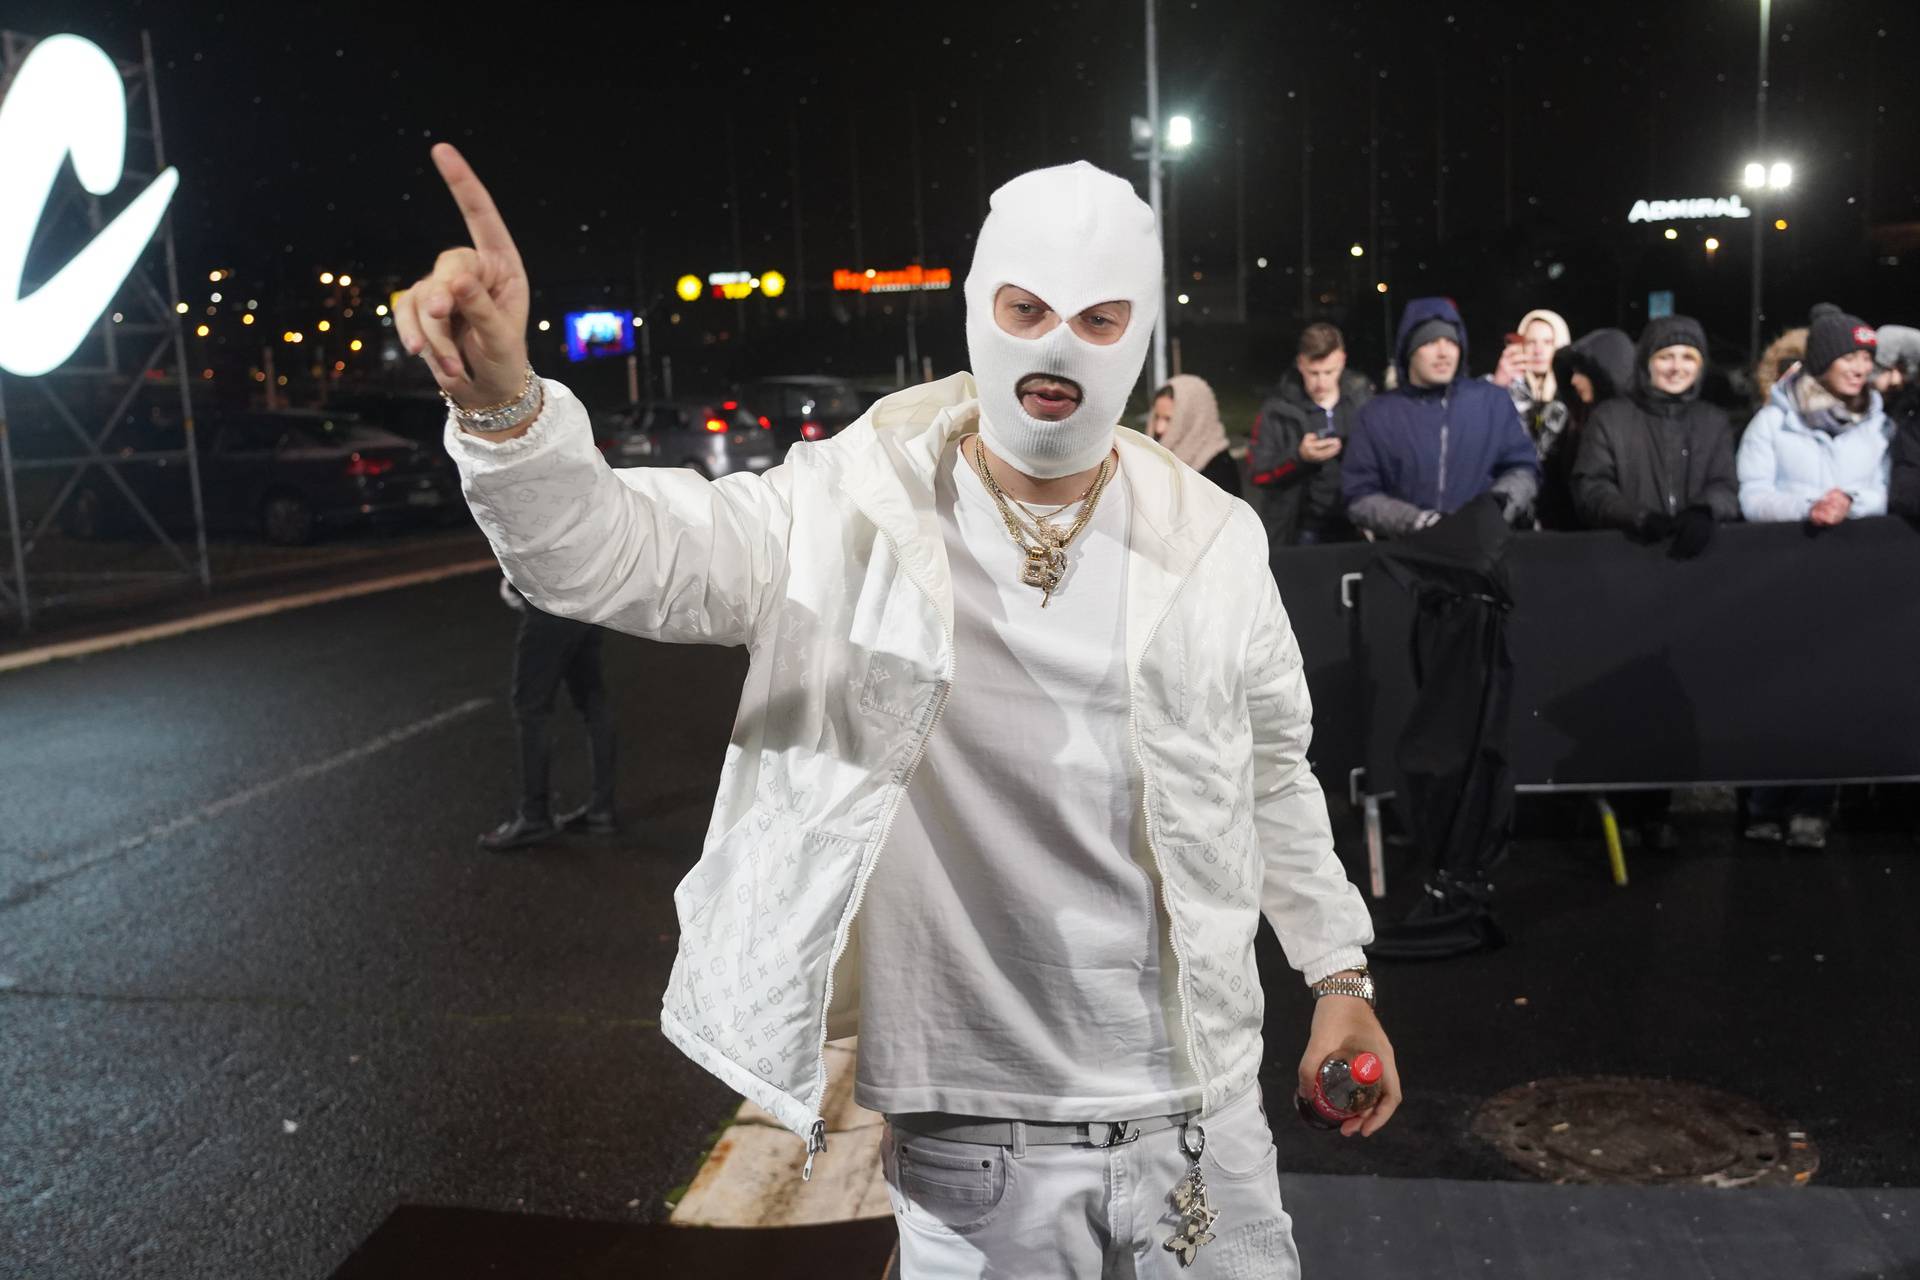 Beograd: Reper Devito u javnosti ne pokazuje lice, maska na glavi njegov je zaštitni znak